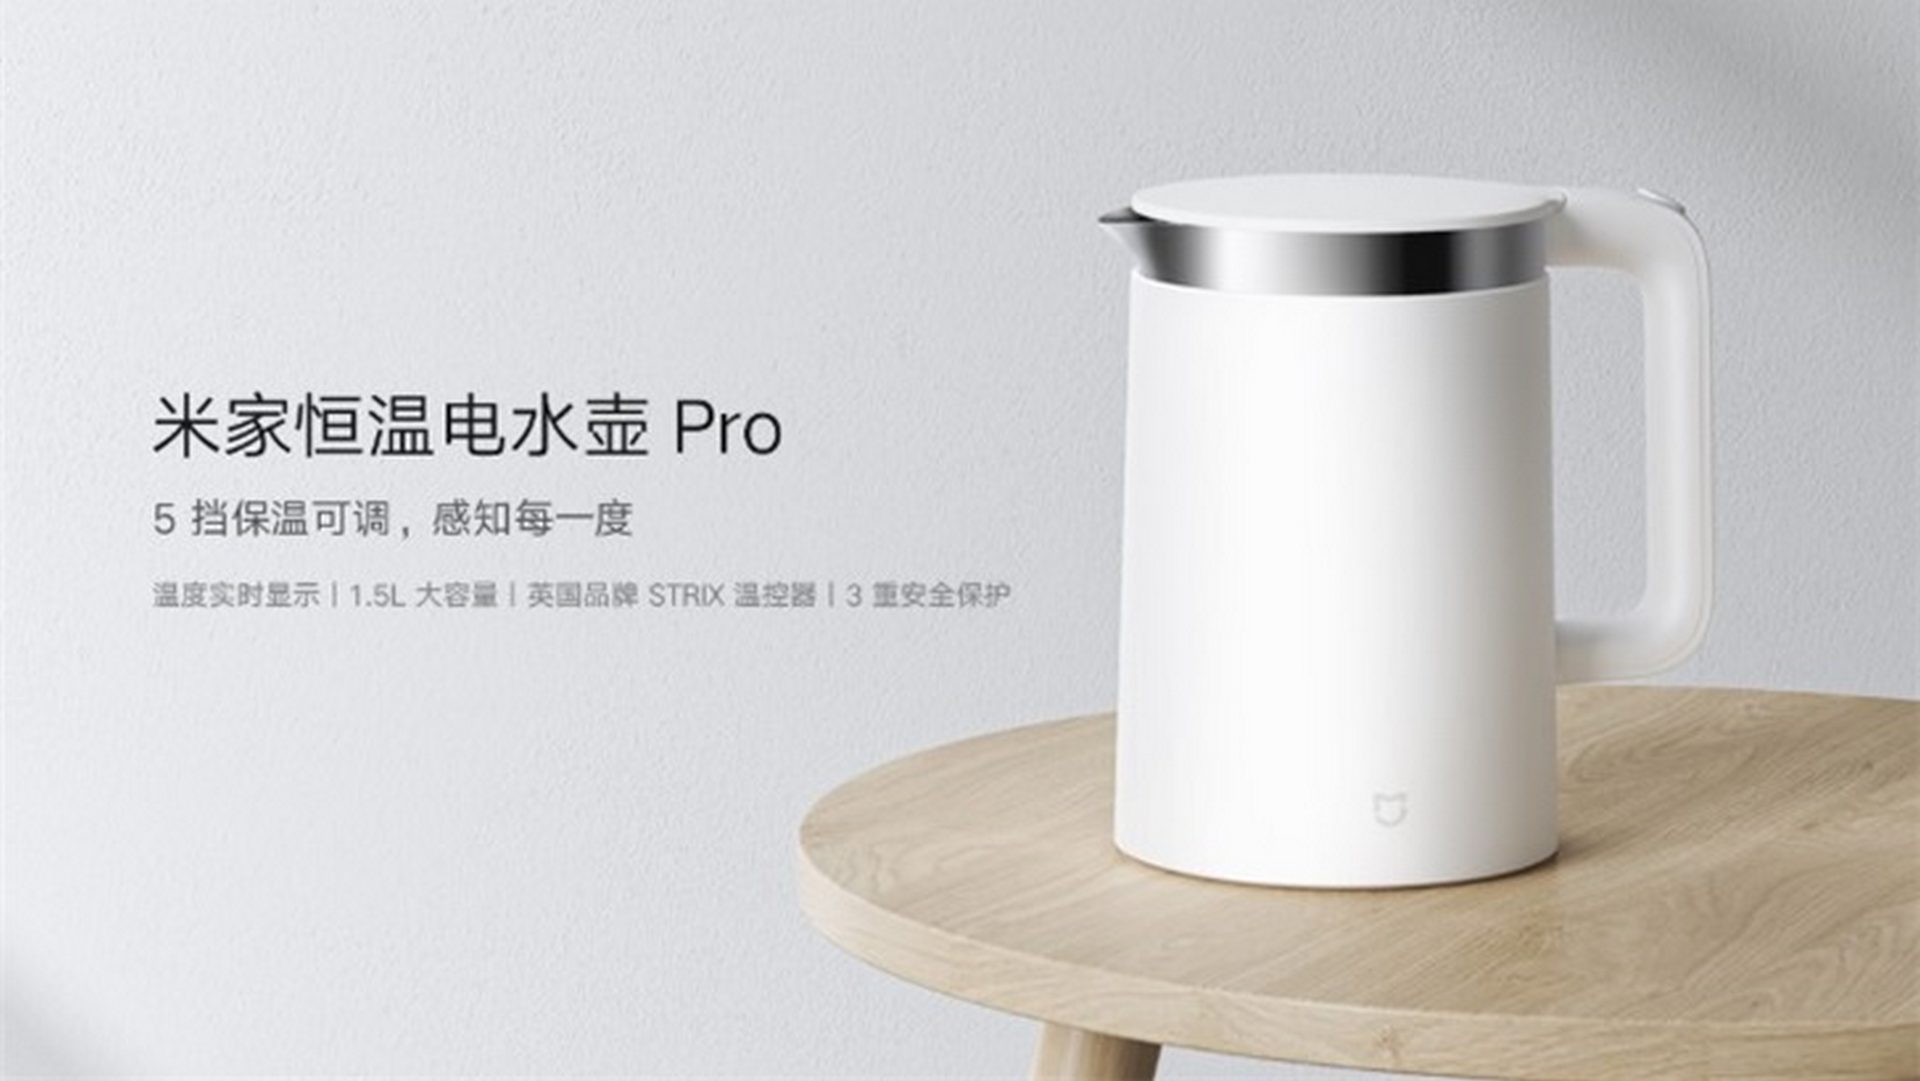 Xiaomi Mi Smart Kettle Pro è il bollitore con display e controllo